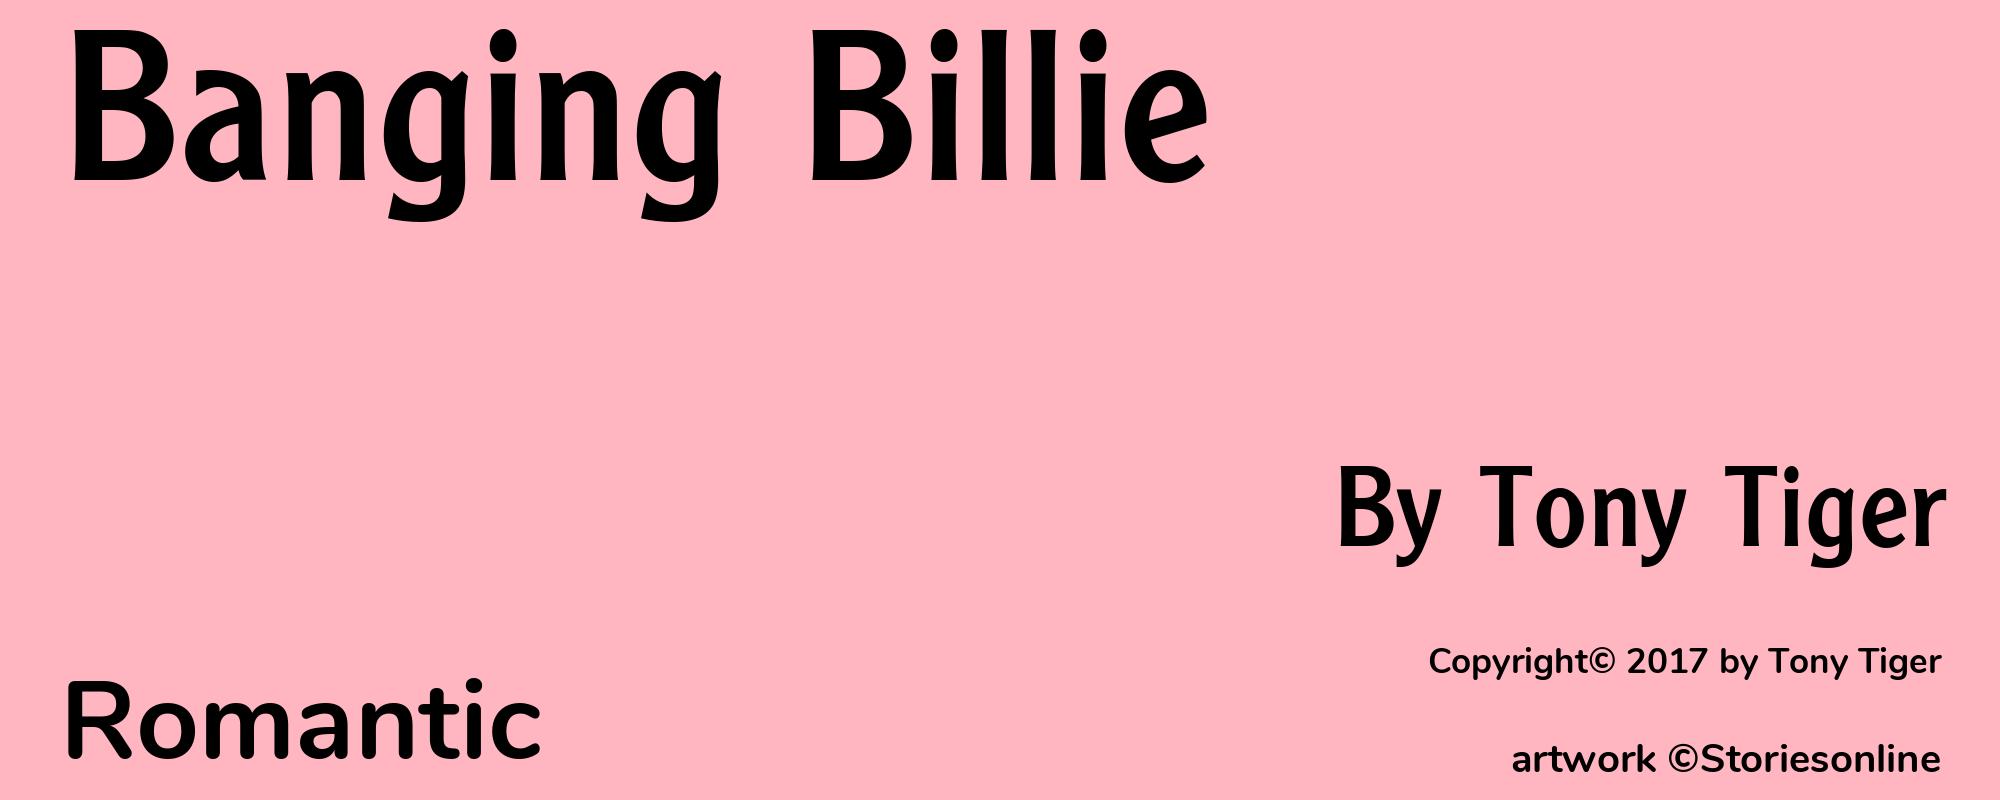 Banging Billie - Cover